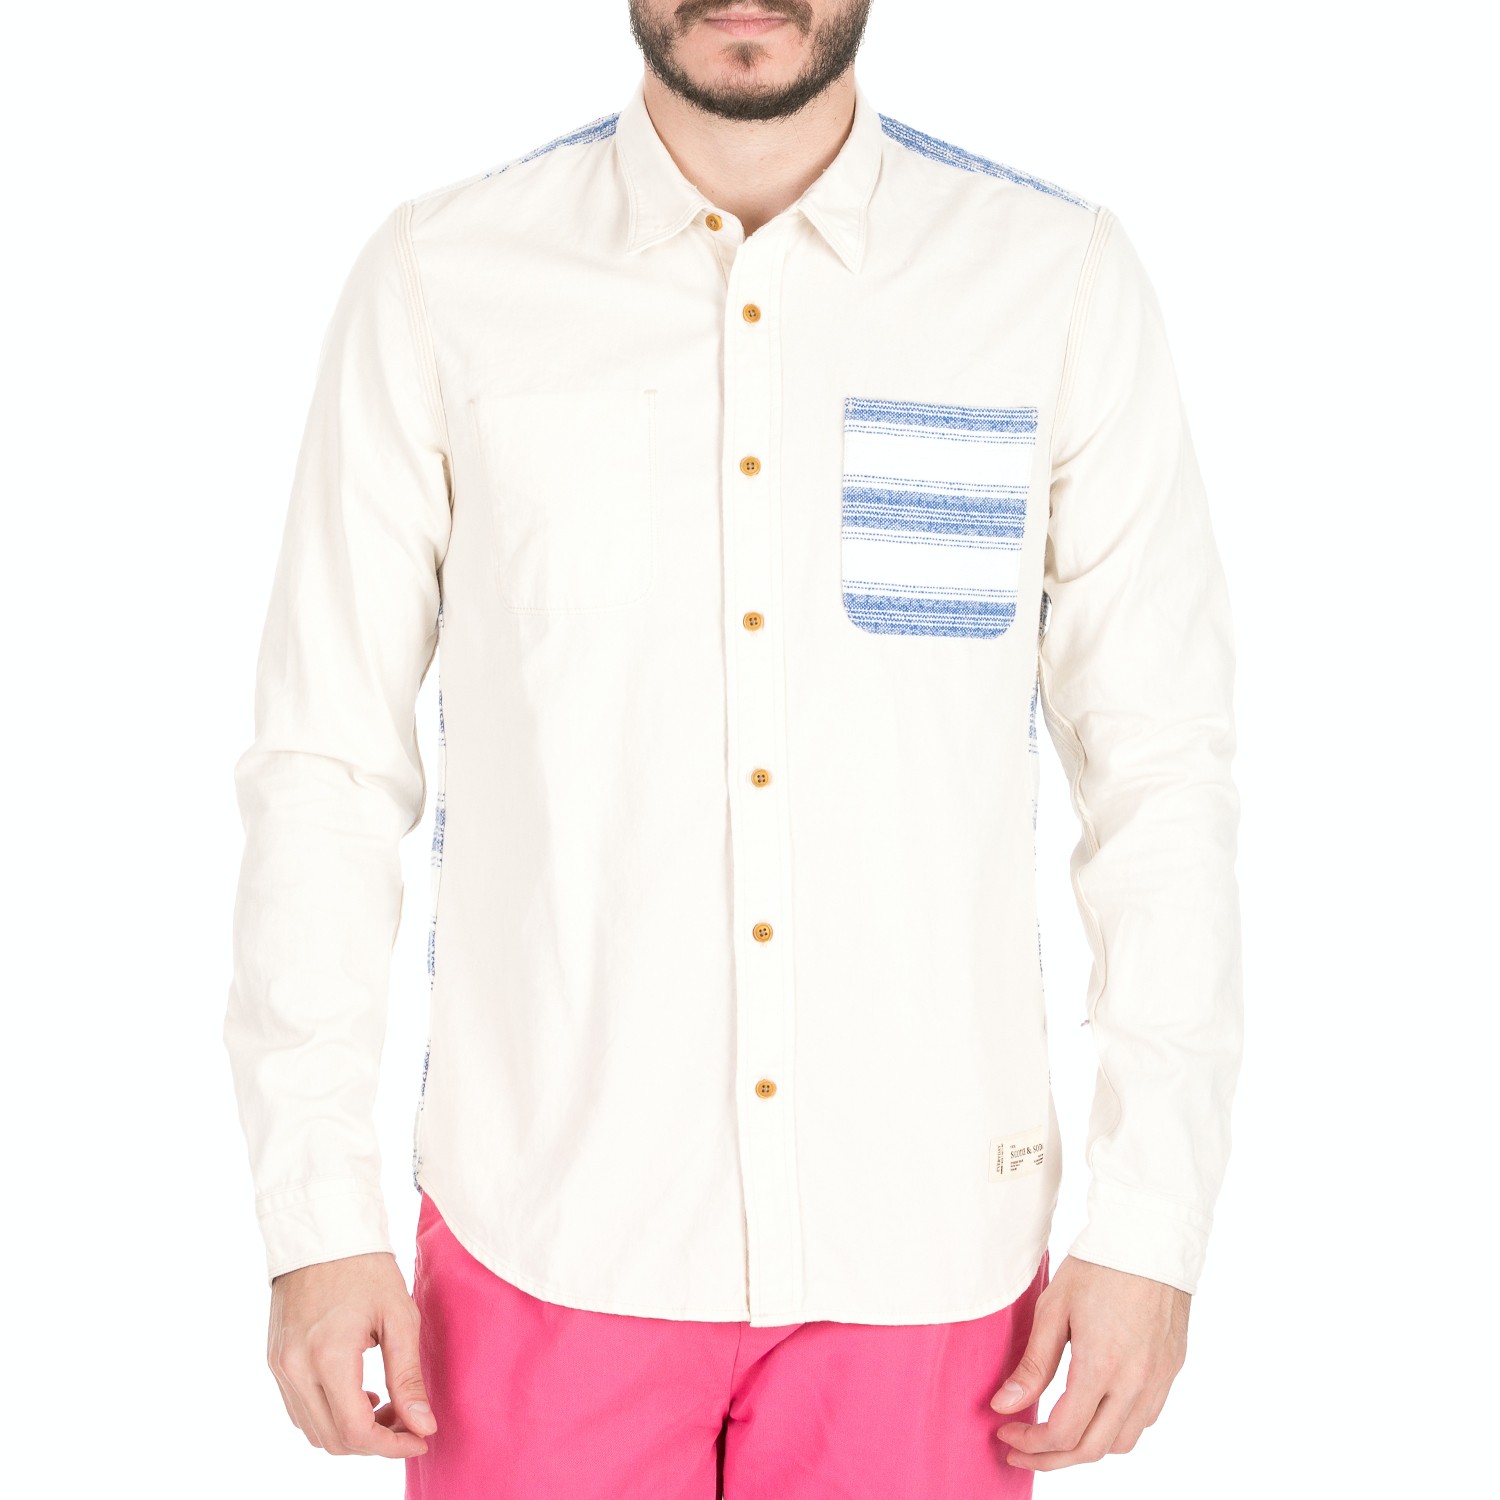 Ανδρικά/Ρούχα/Πουκάμισα/Μακρυμάνικα SCOTCH & SODA - Ανδρικό πουκάμισο SCOTCH & SODA λευκό